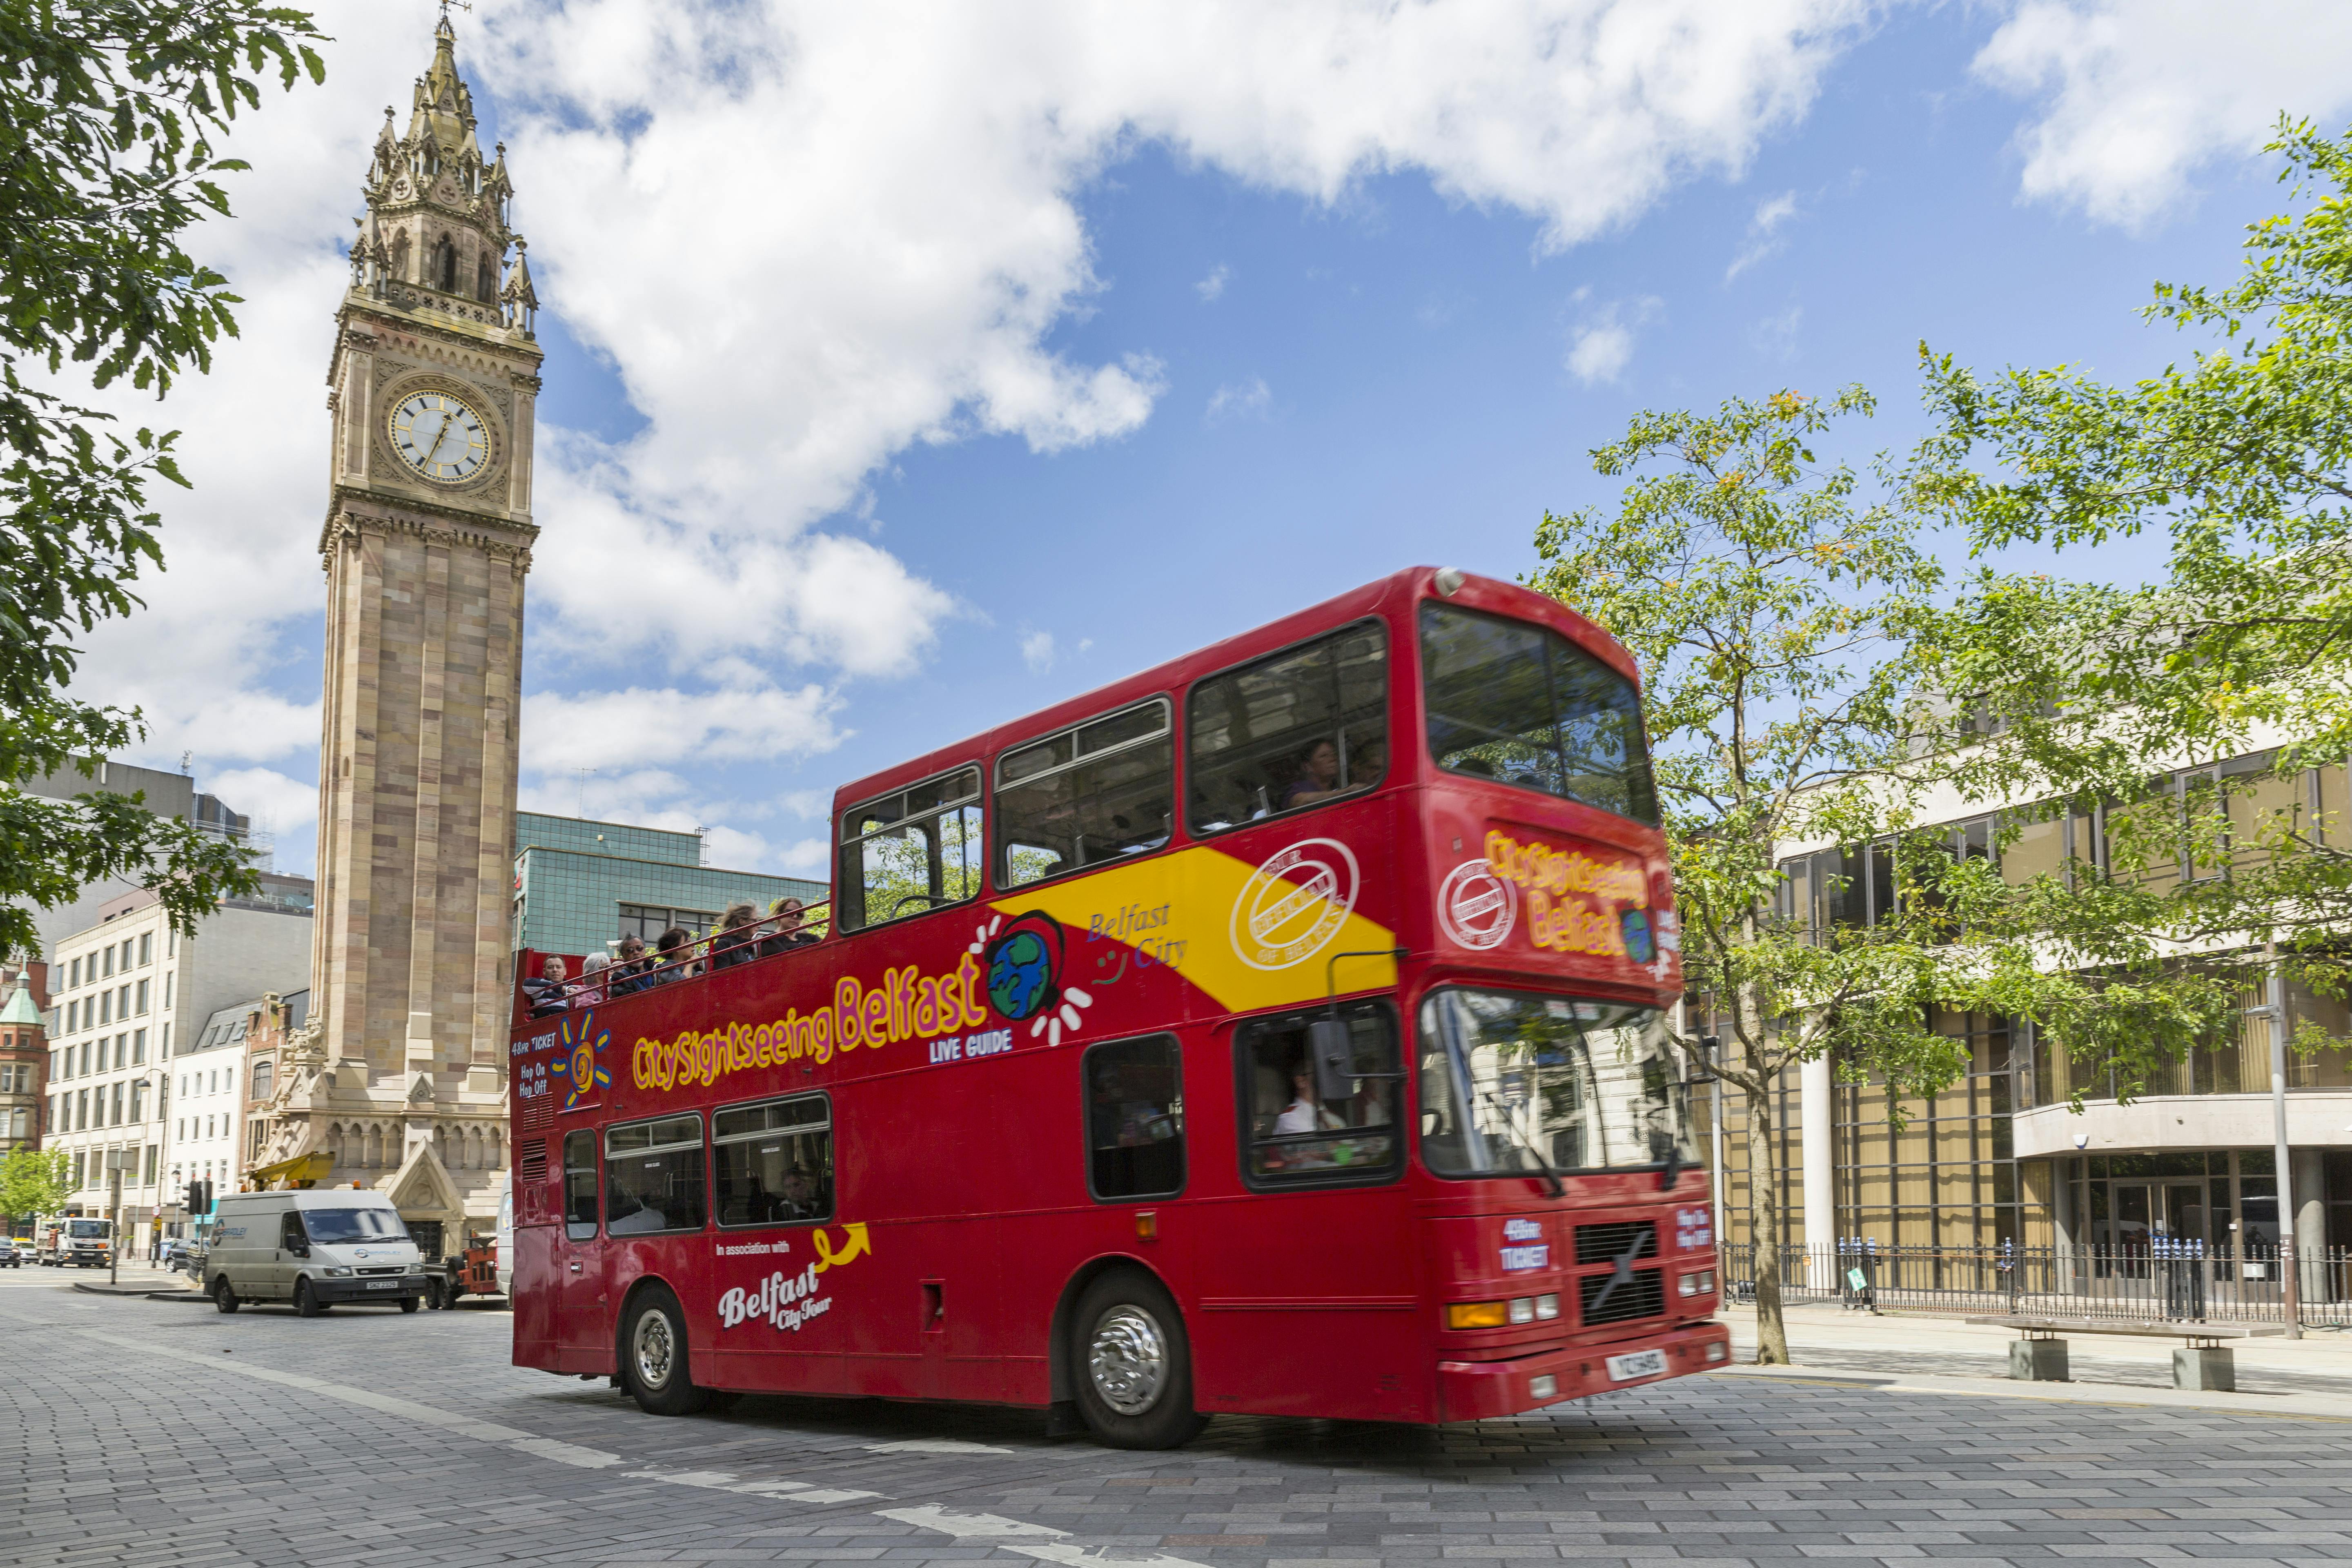 Excursão turística em ônibus hop-on hop-off pela cidade de Belfast